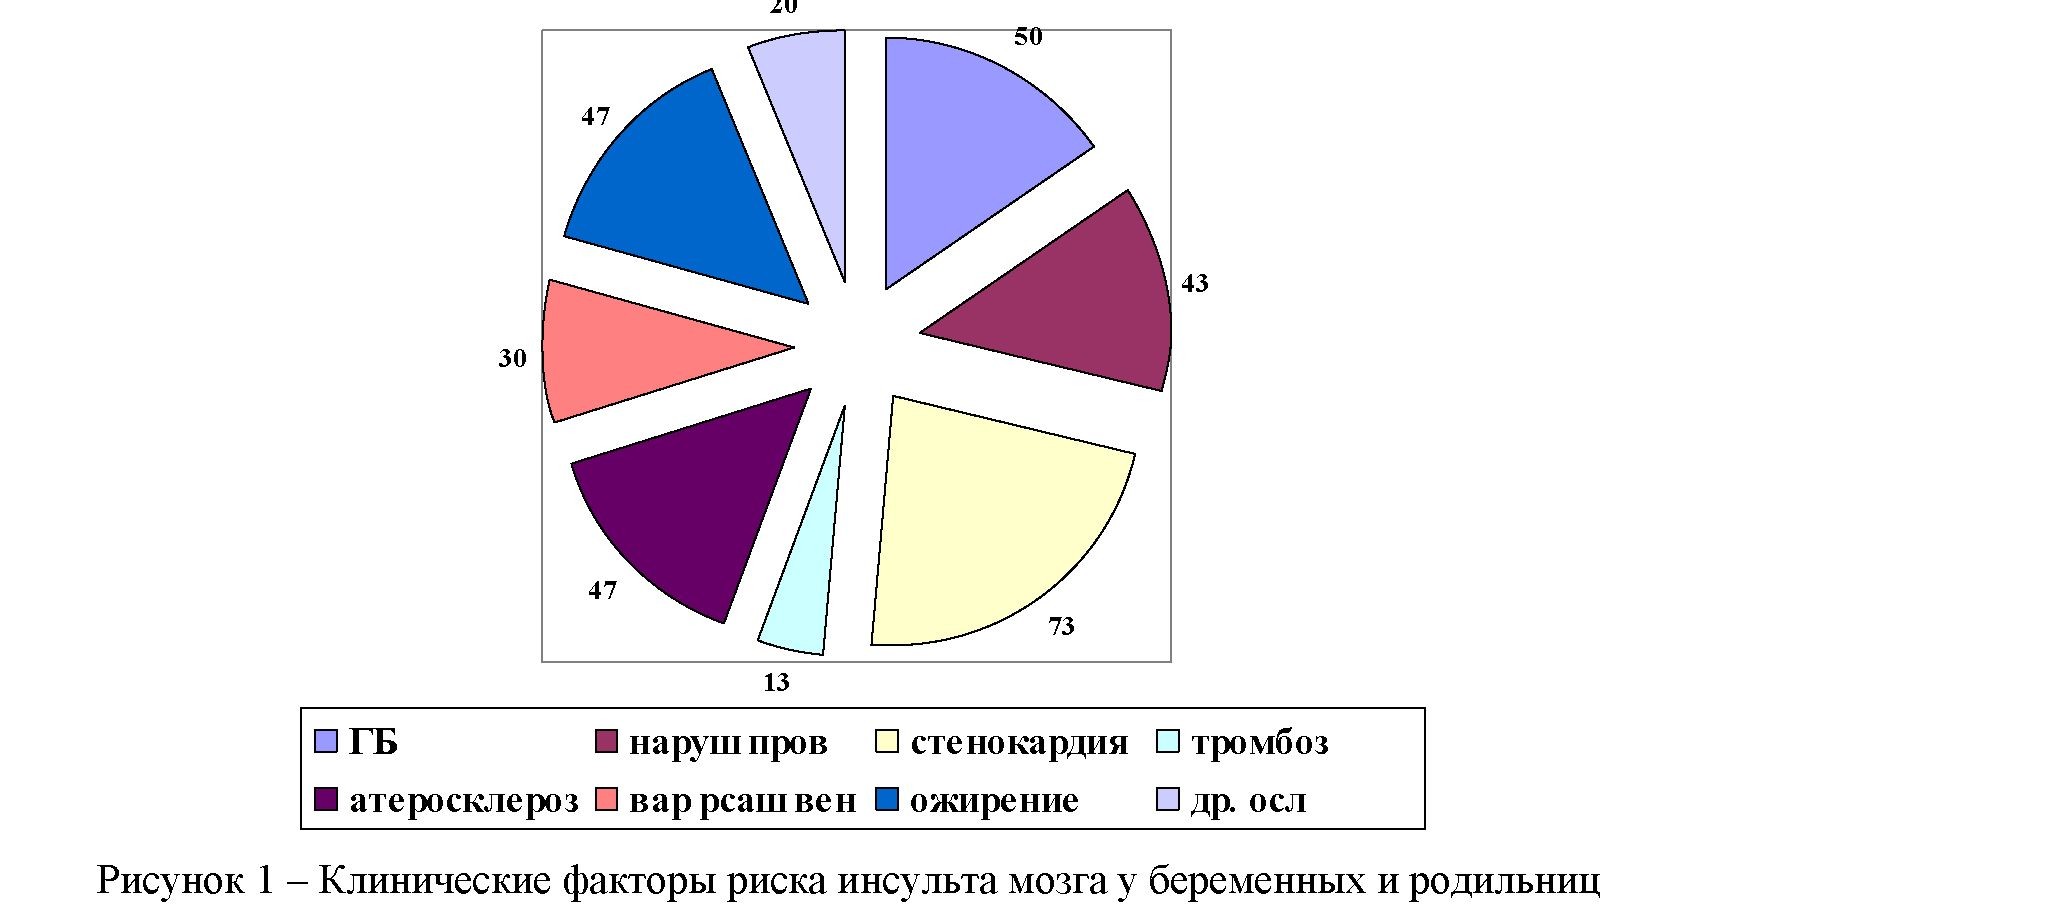 Распространенность факторов риска инсульта мозга у беременных и родильниц южно-казахстанской области